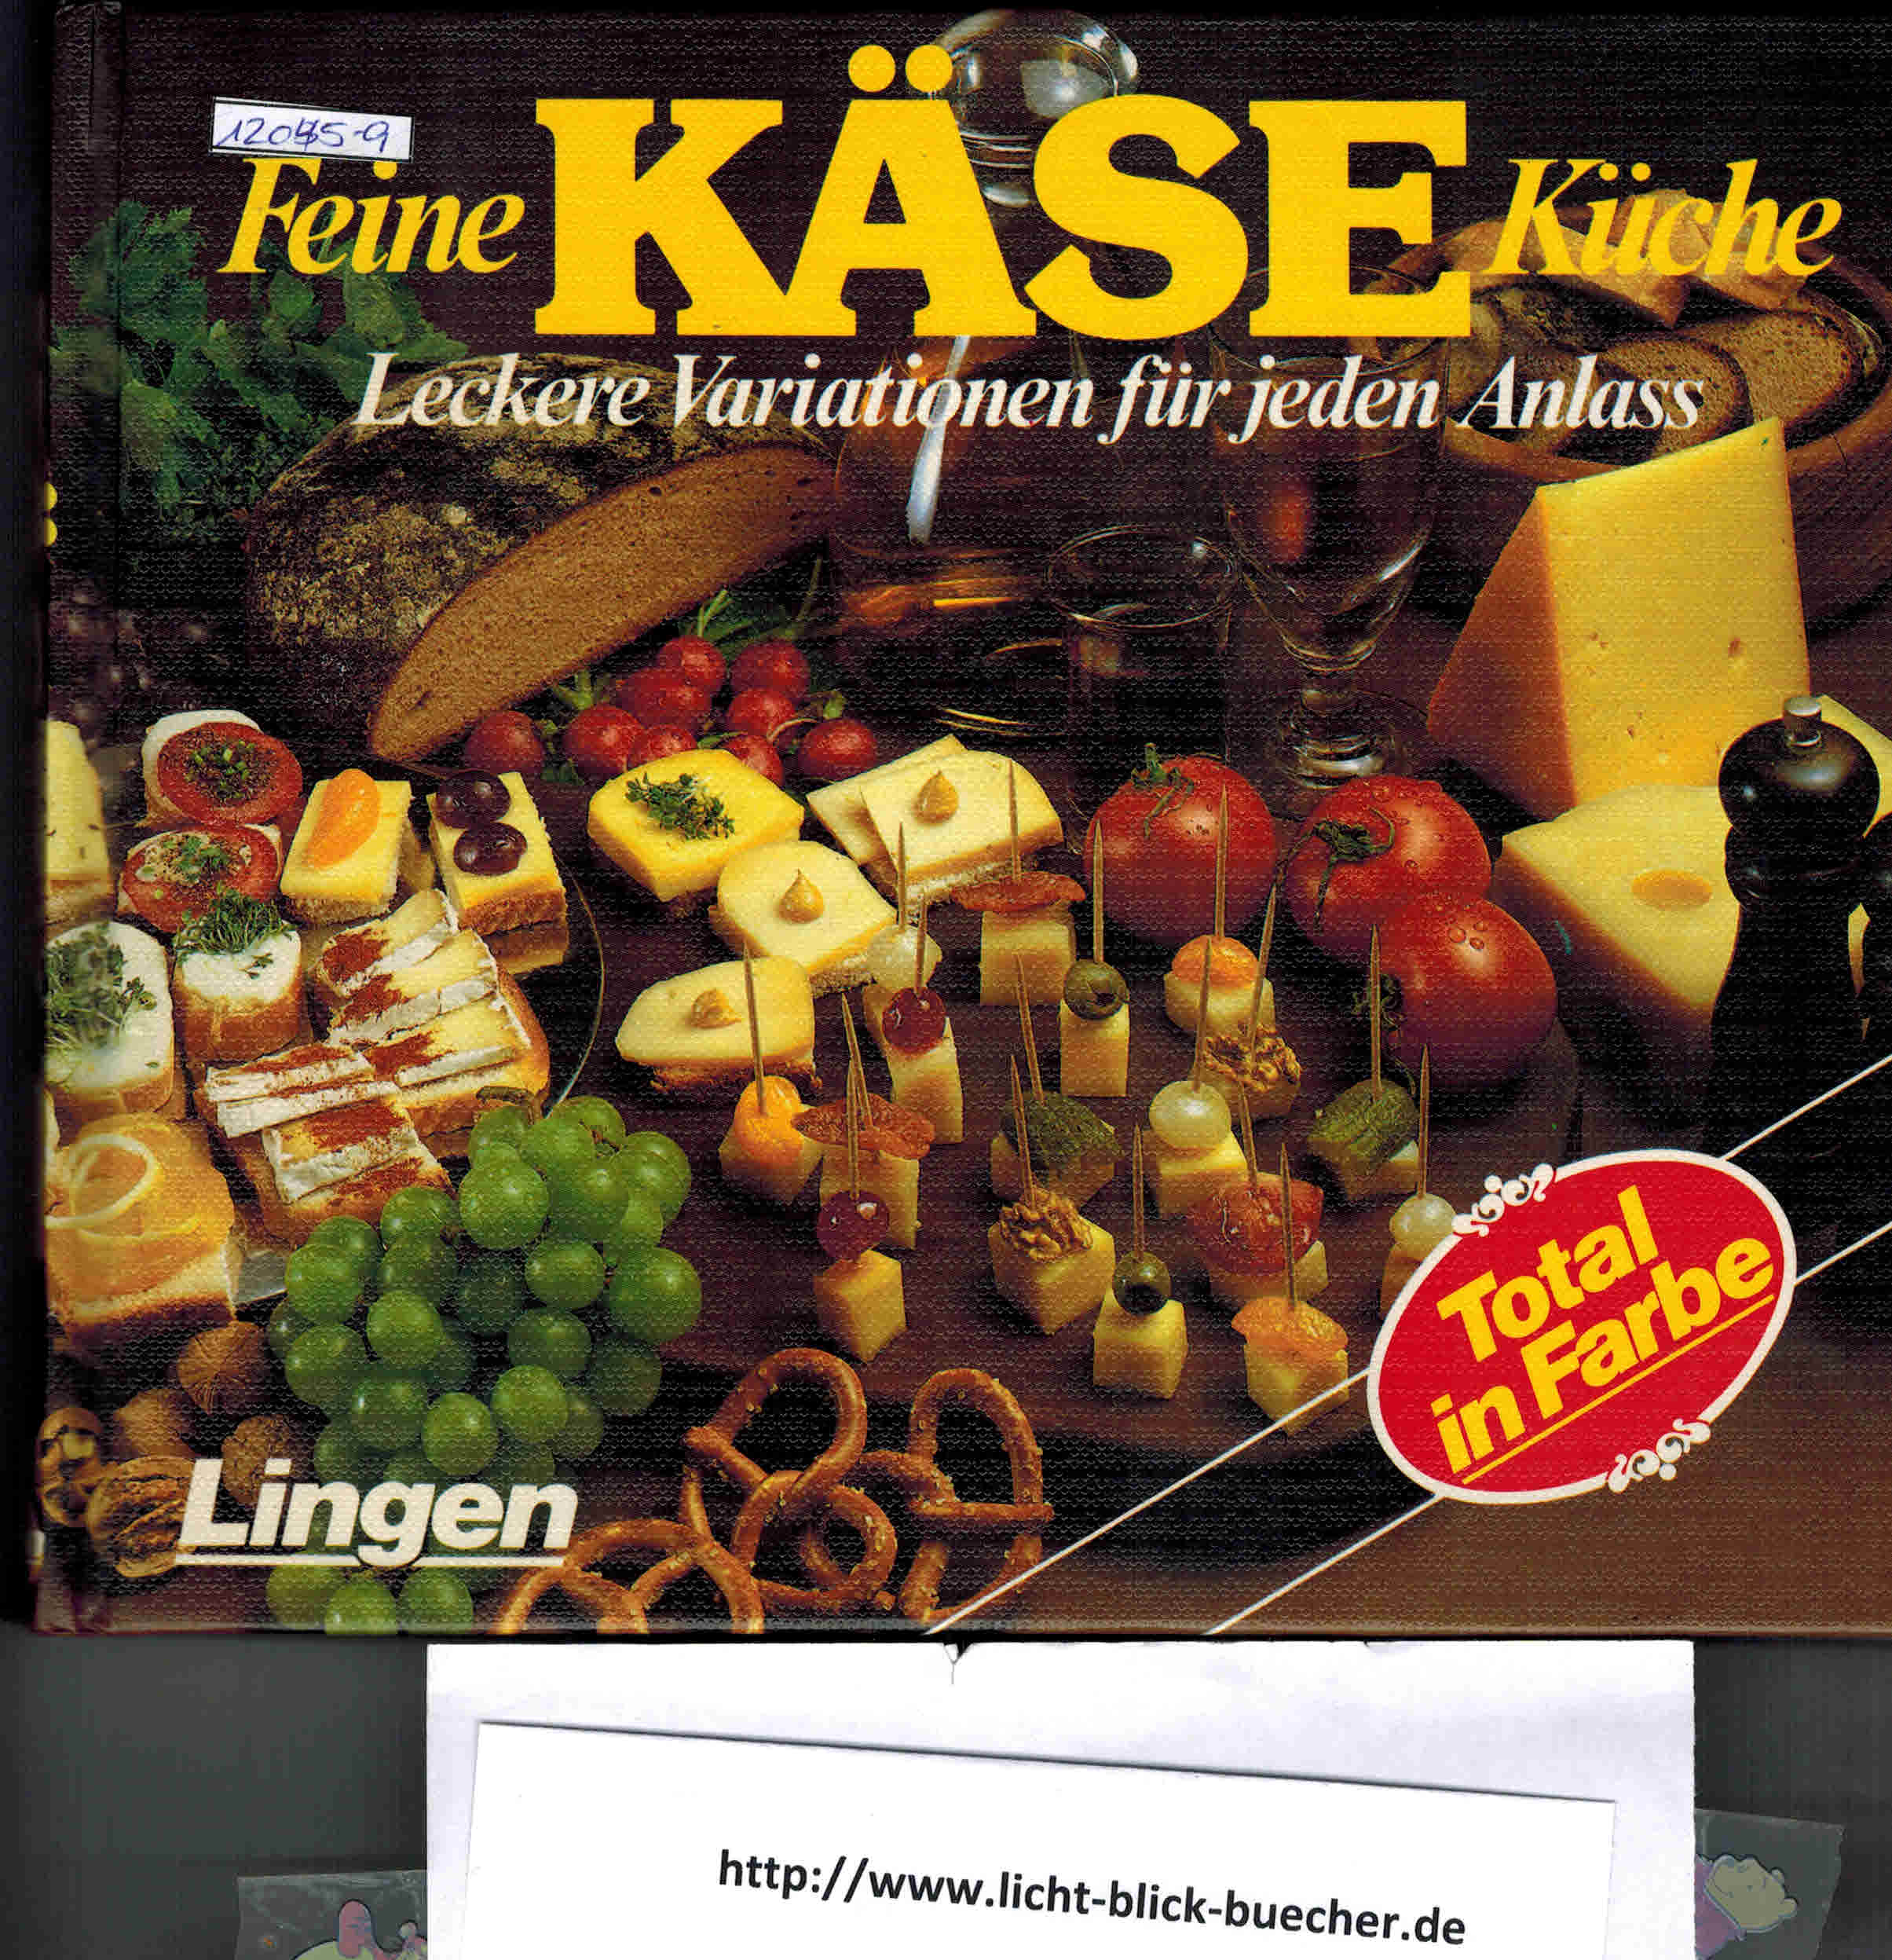 Feine Kaese Kueche Leckere Variationen fuer jeden AnlassR. von der Brueck ( Hrsg)